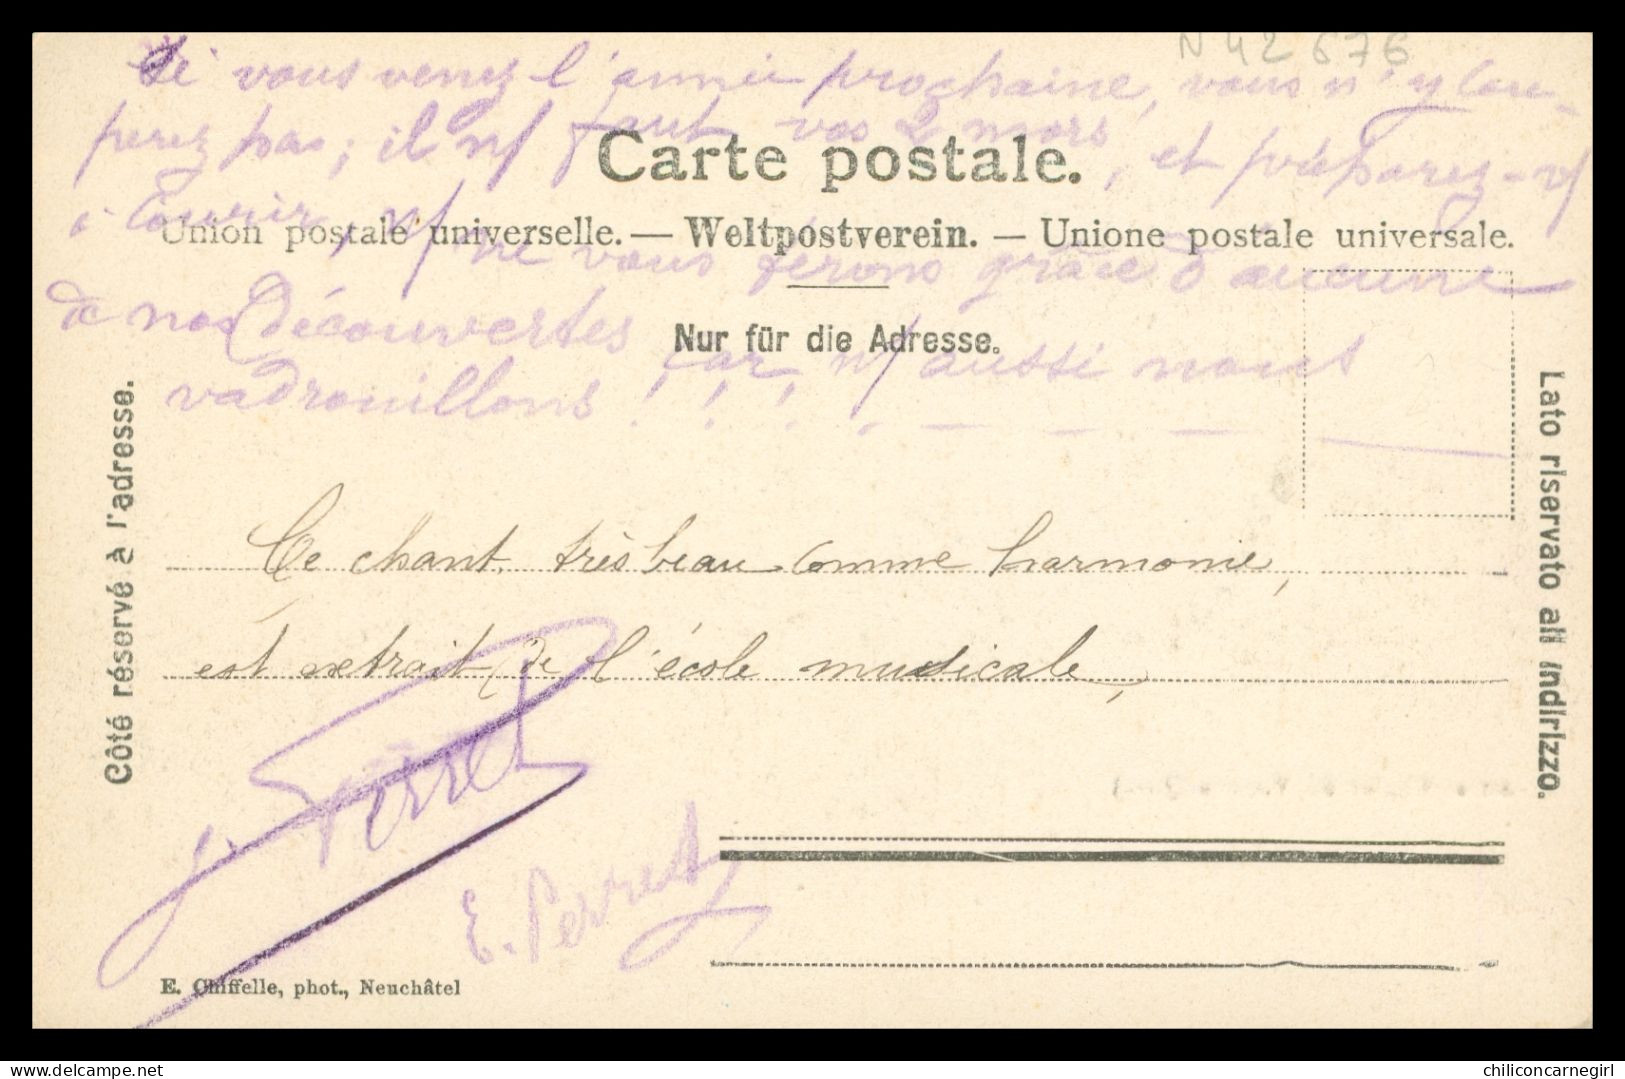 * Chalet Du VUARNE - Armailli - Vaches - 517 C - Photo CHIFELLE - 1904 - Autres & Non Classés